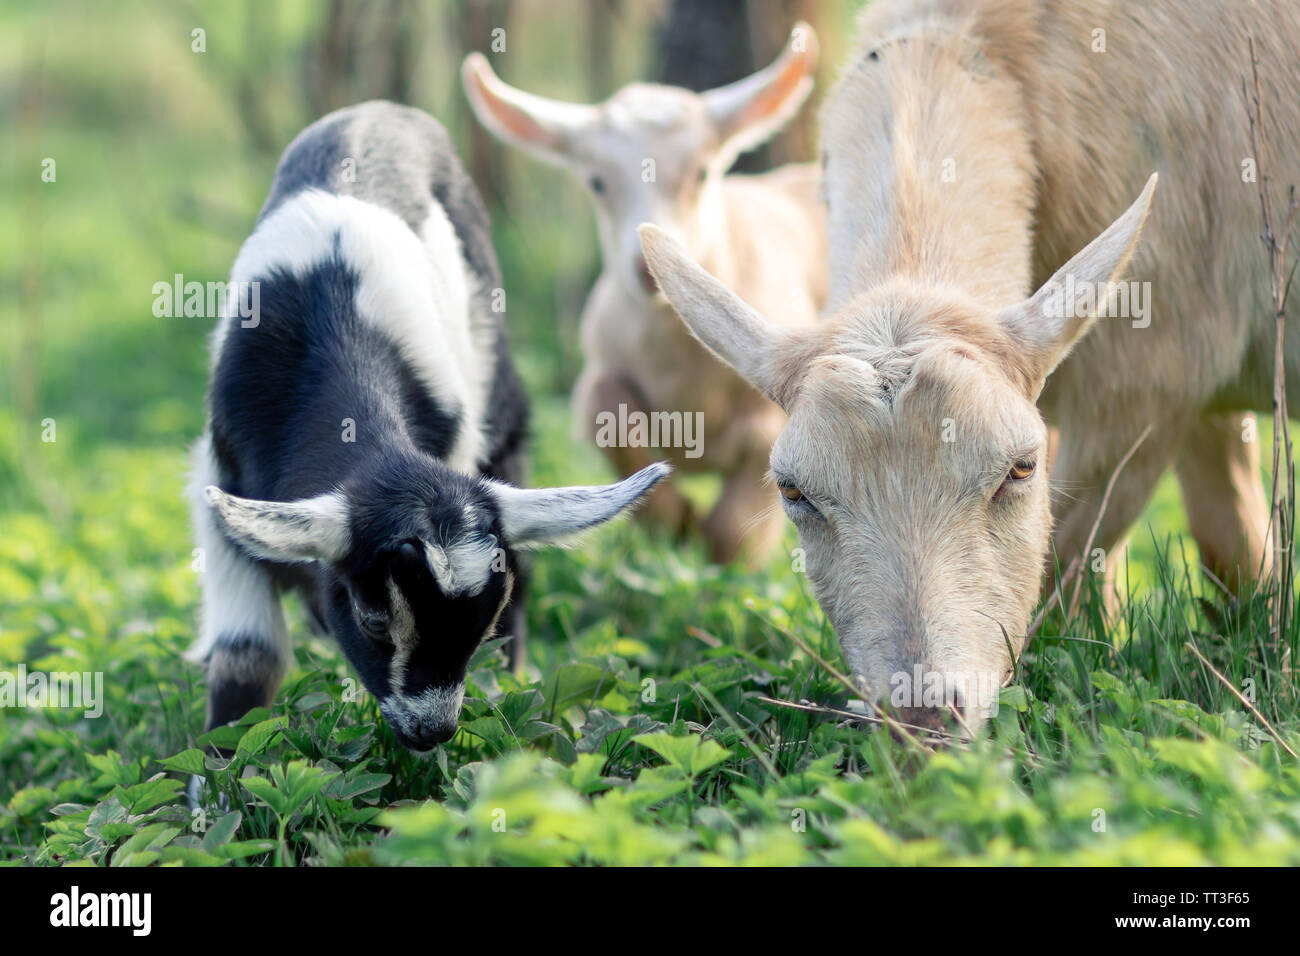 Schwarze und weiße goatlings und seine Mutter Ziege essen Gras auf der Wiese Stockfoto